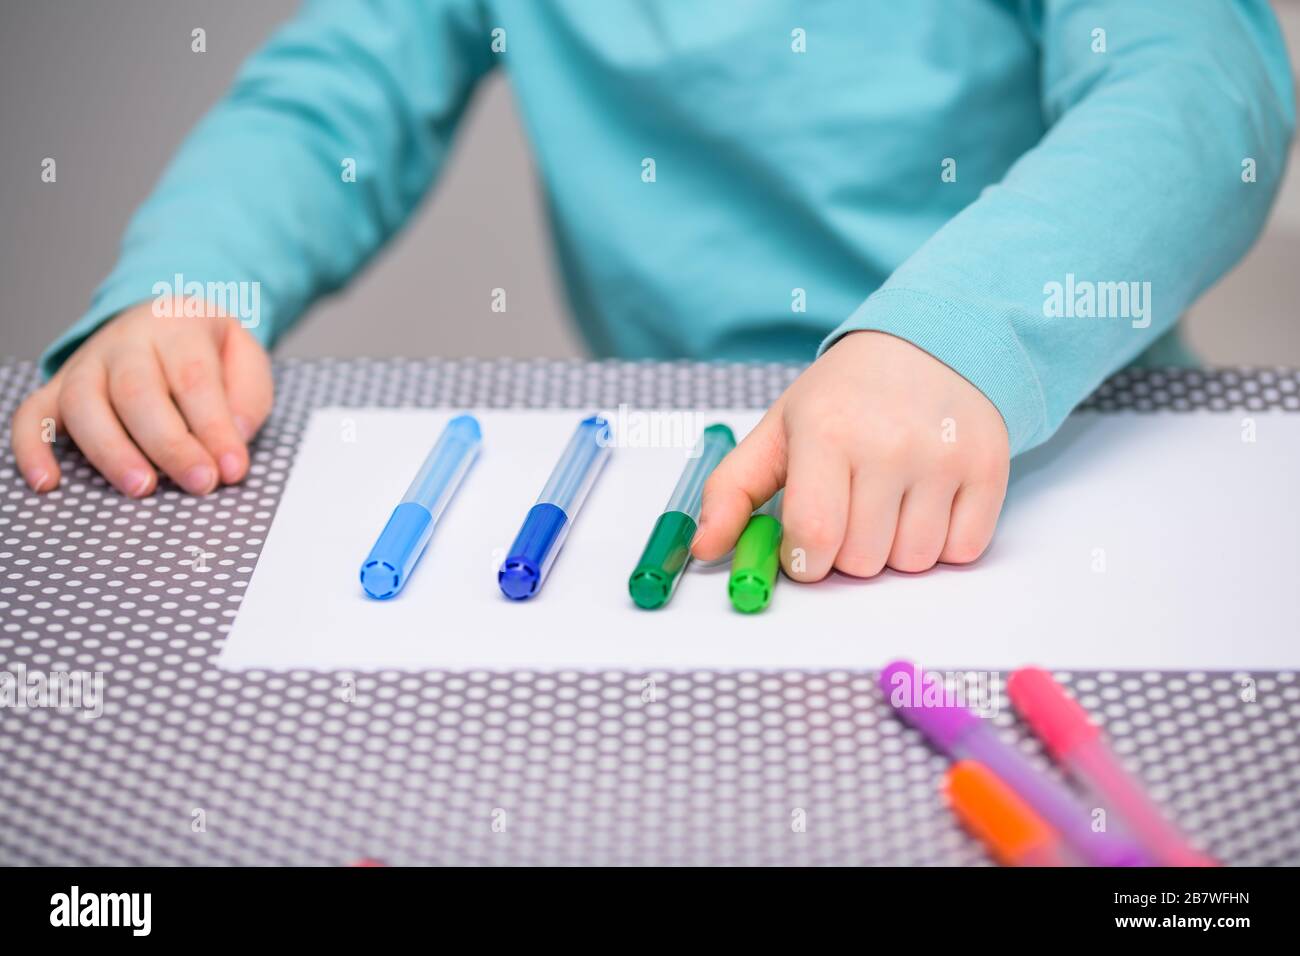 Primo piano di un ragazzo di cinque anni che gioca e allineano le penne a colori su una carta bianca posta su un tavolo con puntini bianchi. Il ragazzo sta tenendo una penna verde. Foto Stock